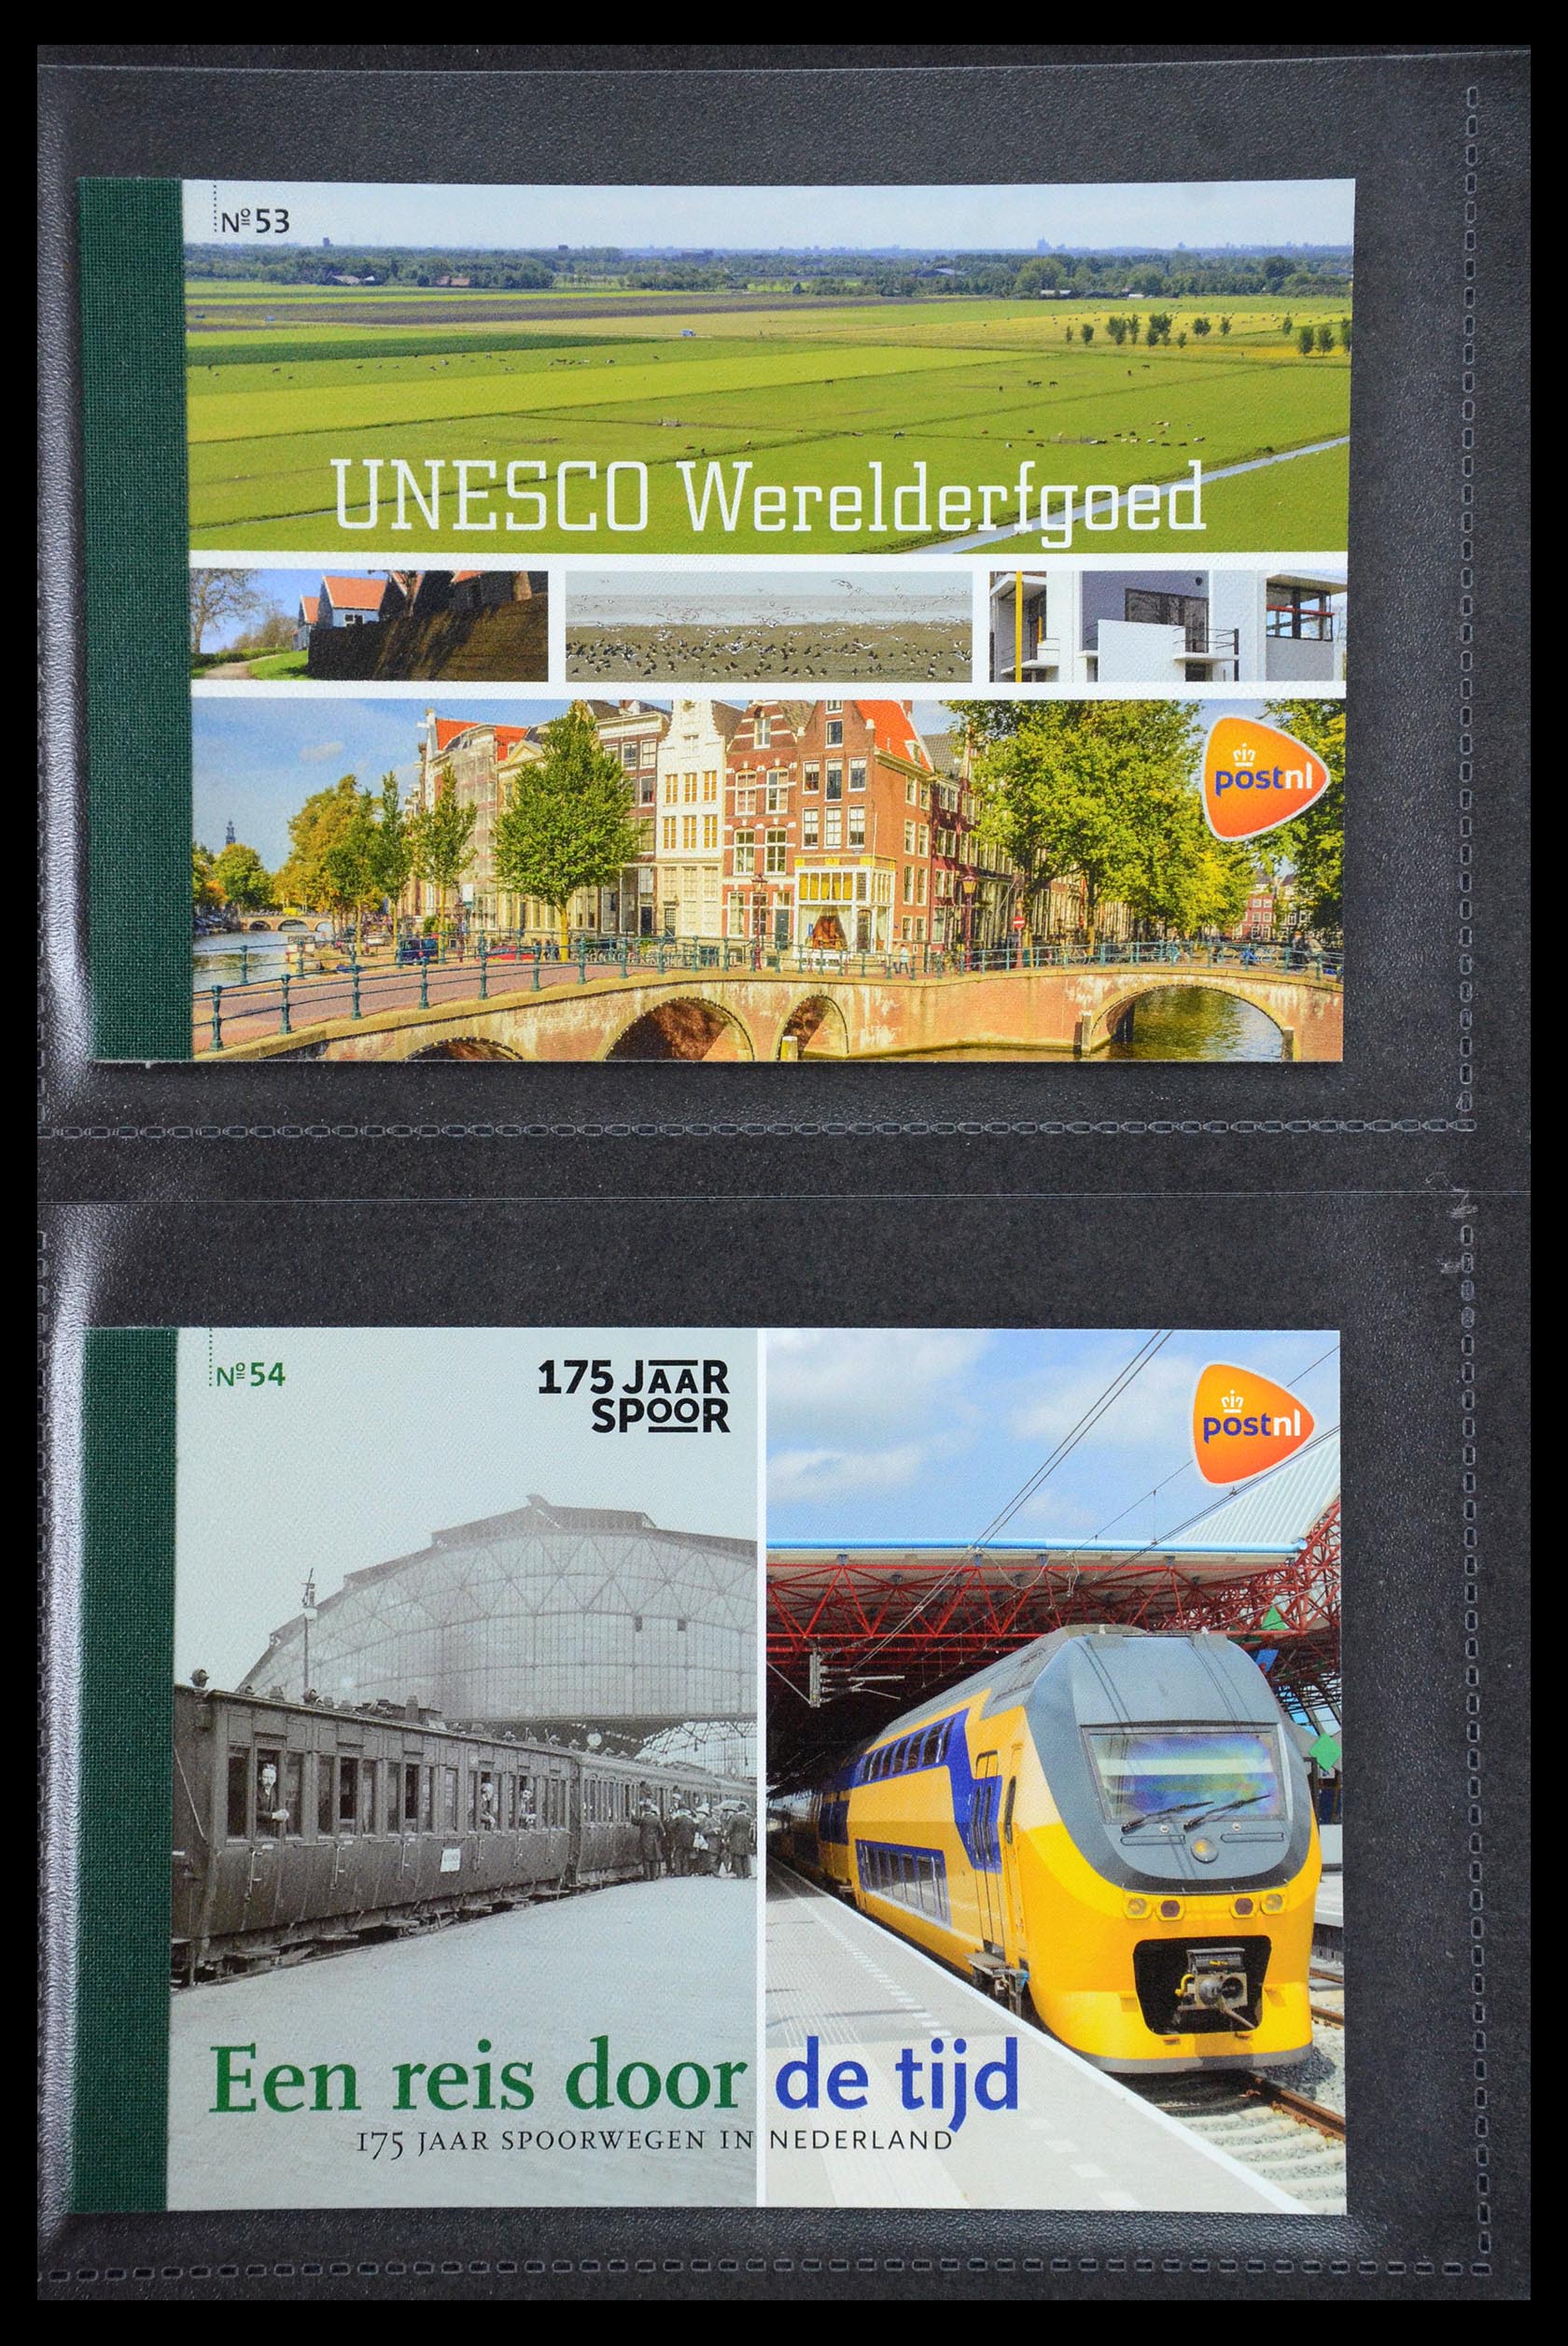 35945 027 - Stamp Collection 35945 Netherlands prestige booklets 2013-2019.